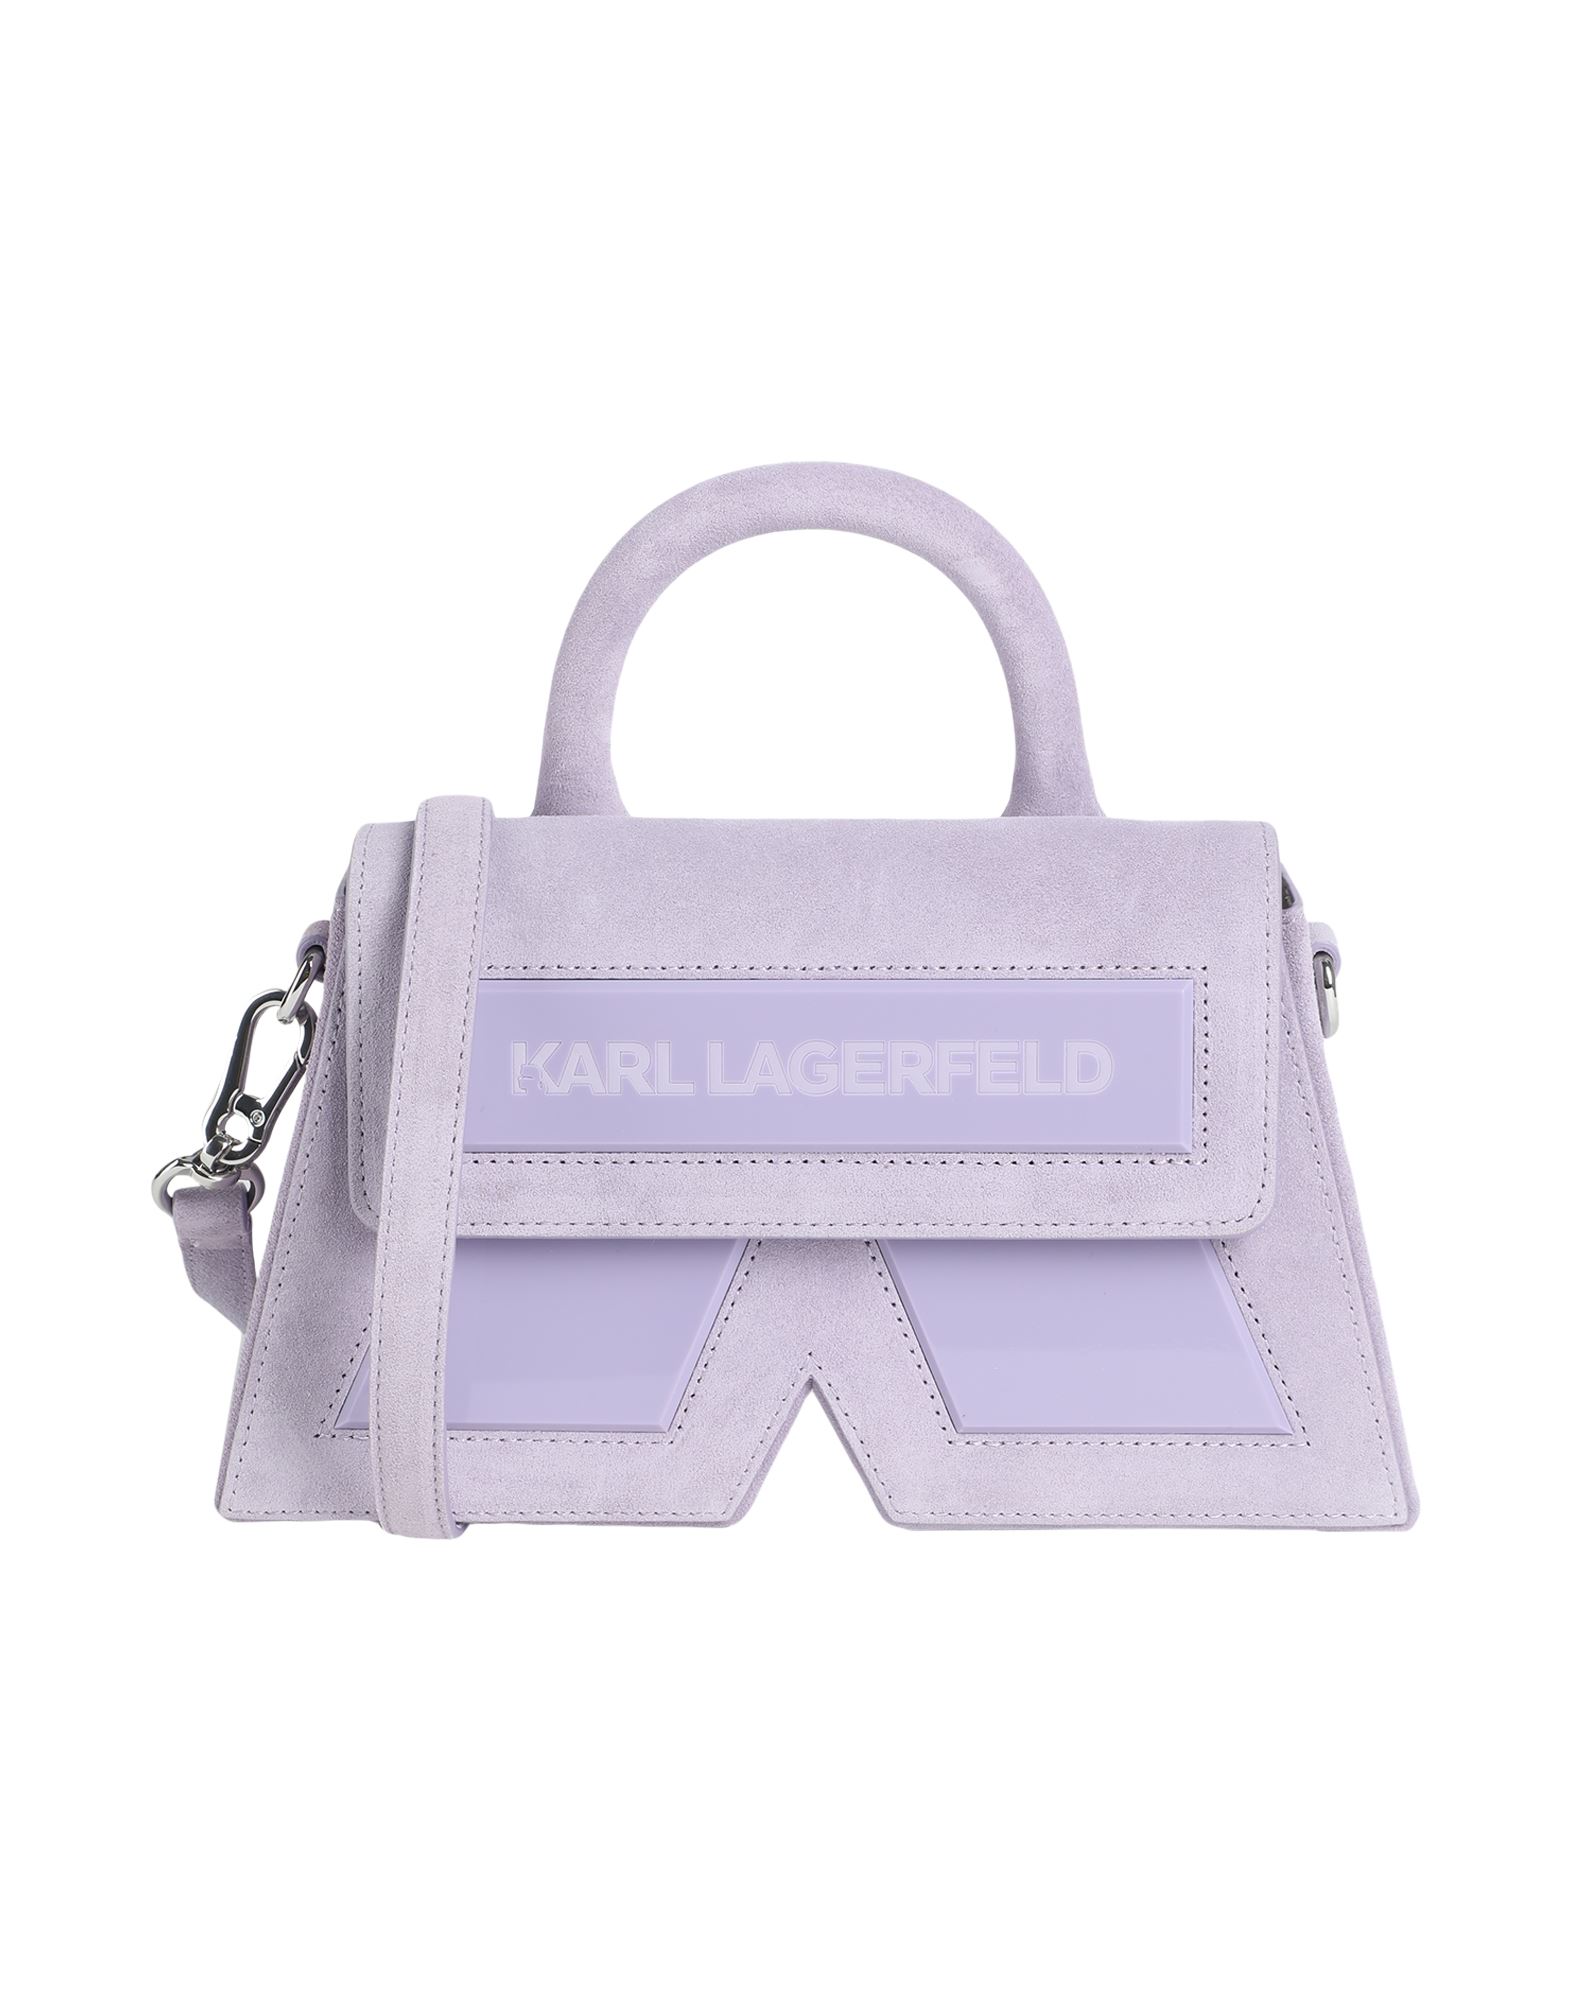 カール・ラガーフェルド(Karl Lagerfeld) ハンドバッグ | 通販・人気